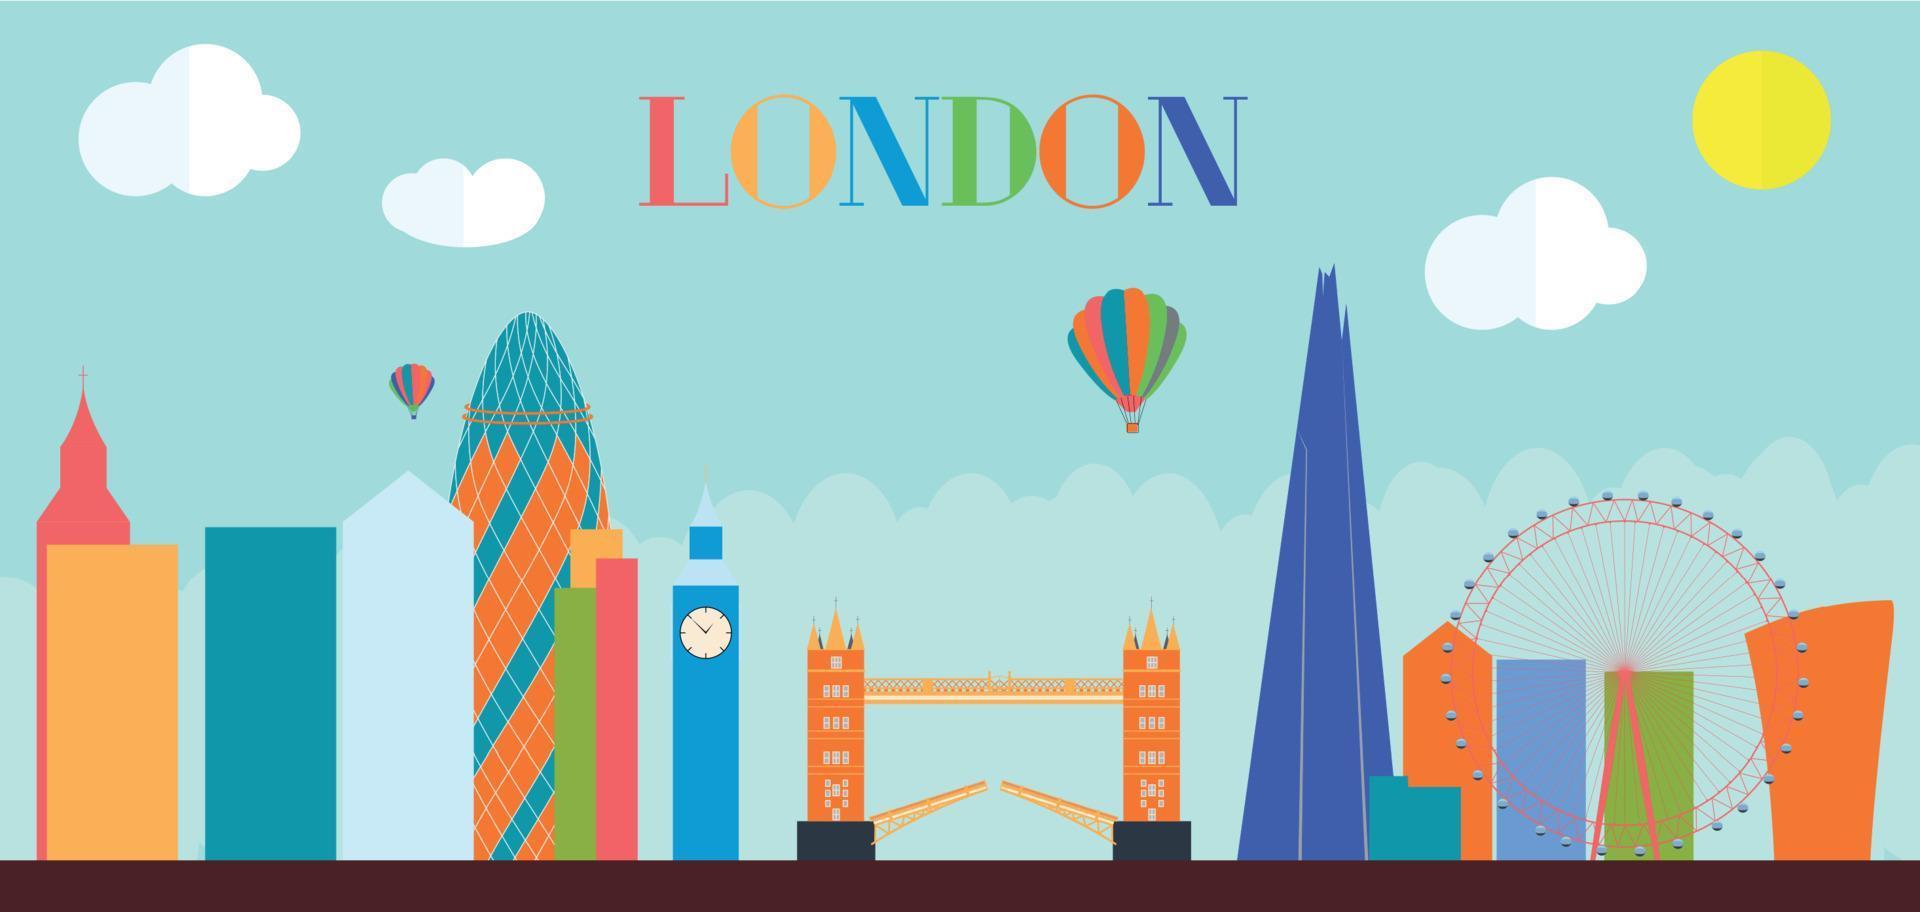 Royaume-Uni, silhouette fond de ville de Londres. illustration vectorielle. vecteur